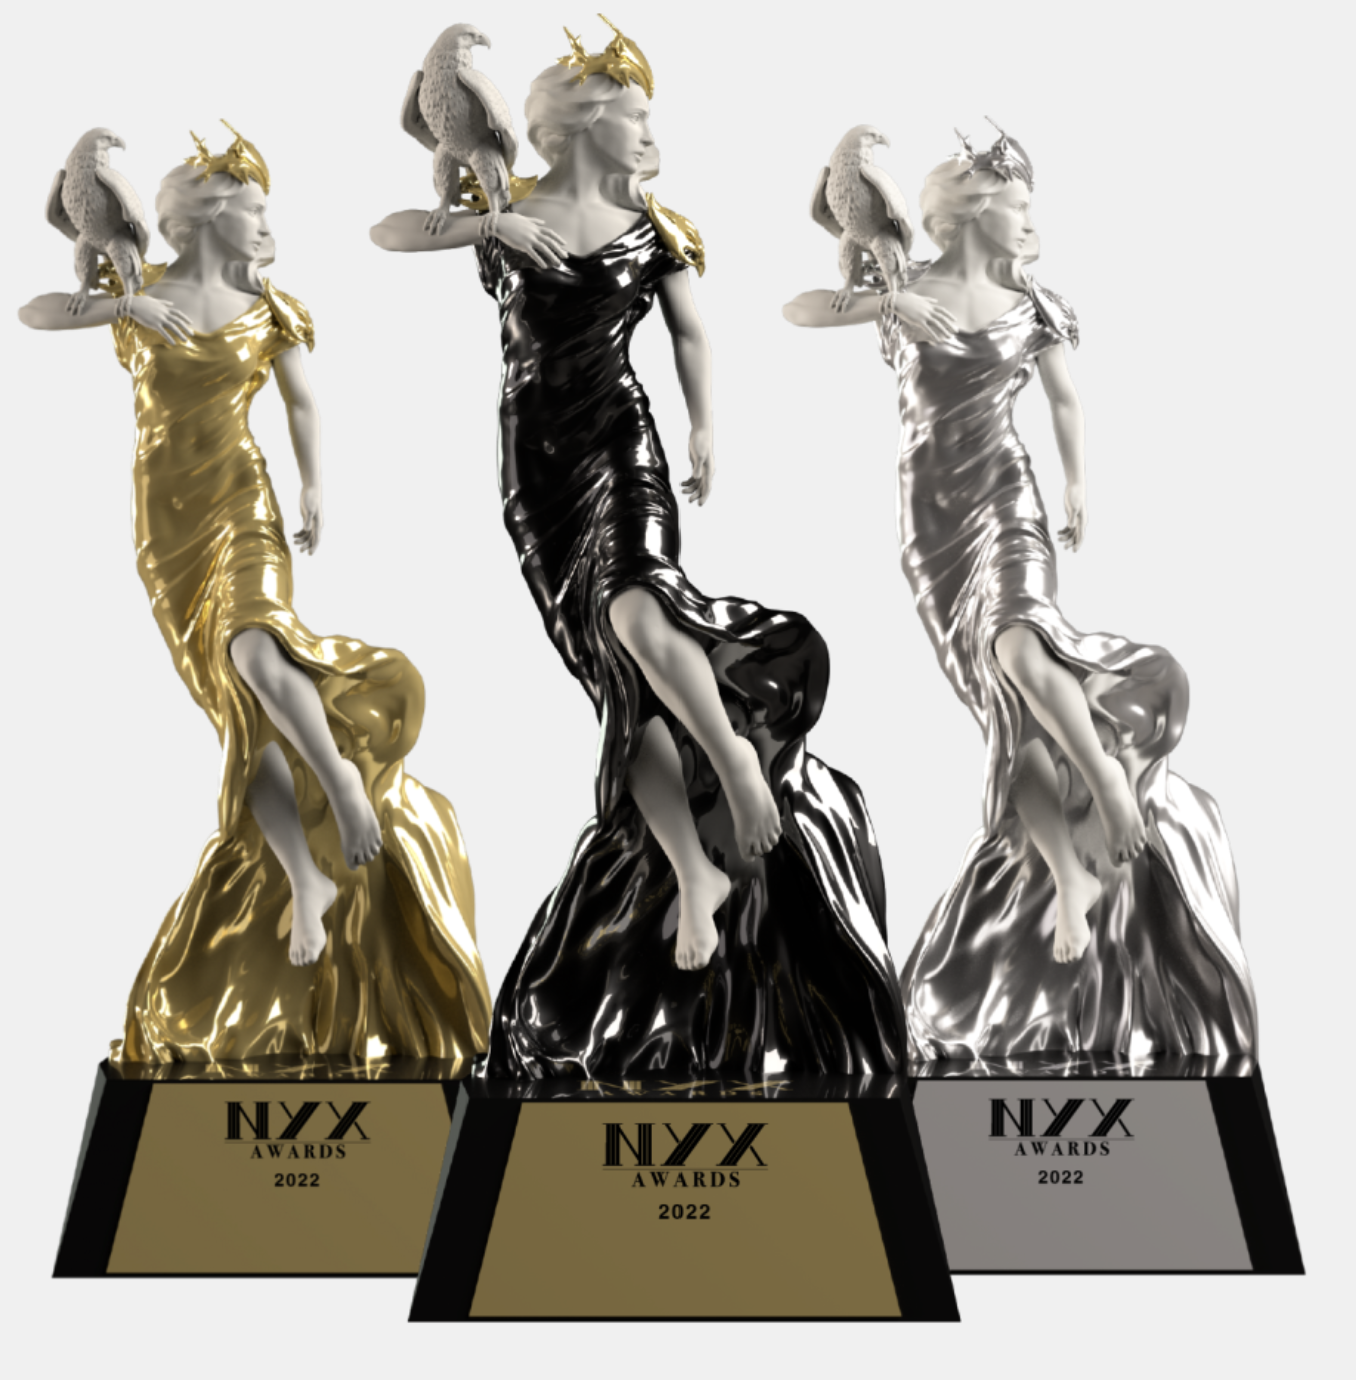 Dragon Horse Agency Wins 4 NYX Marcom Awards – 2022